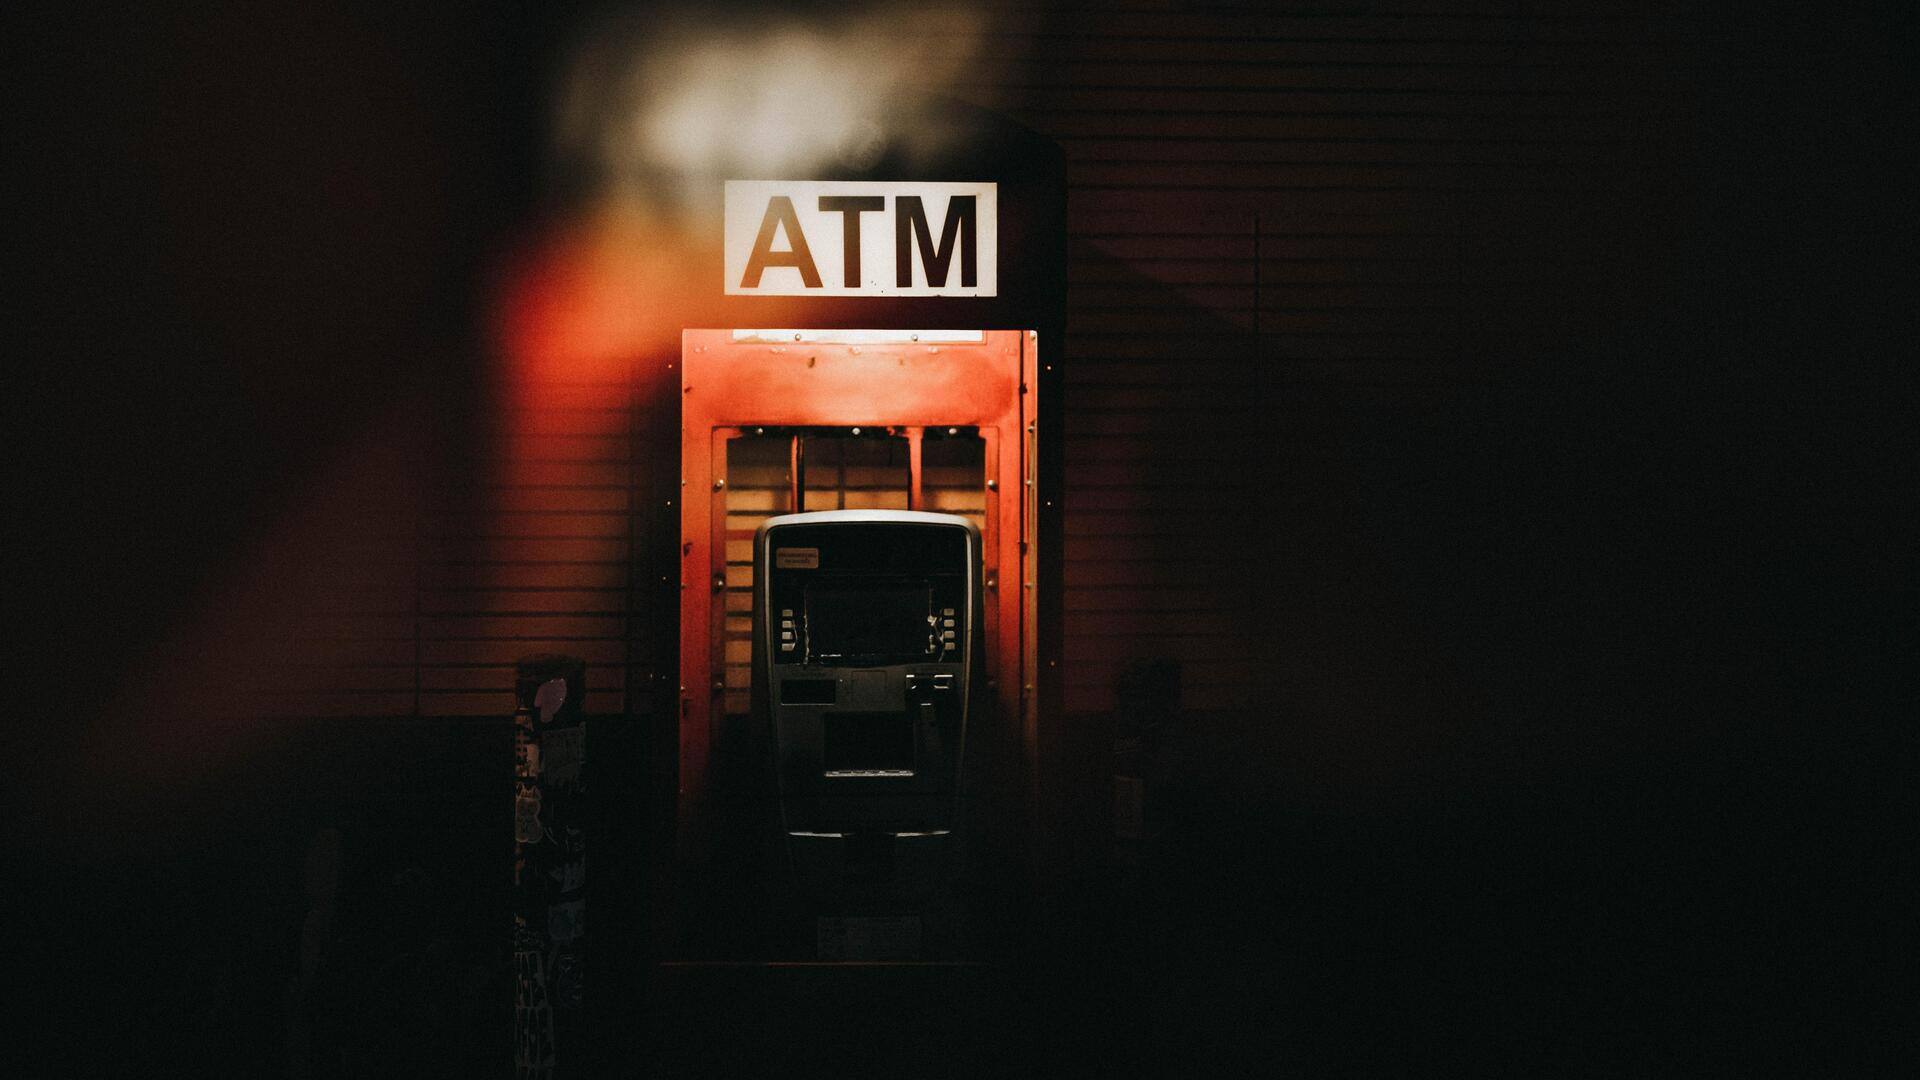 महाराष्ट्र: ATM को गैस कटर से काटने की कोशिश में लगी आग, 21 लाख रुपये खाक